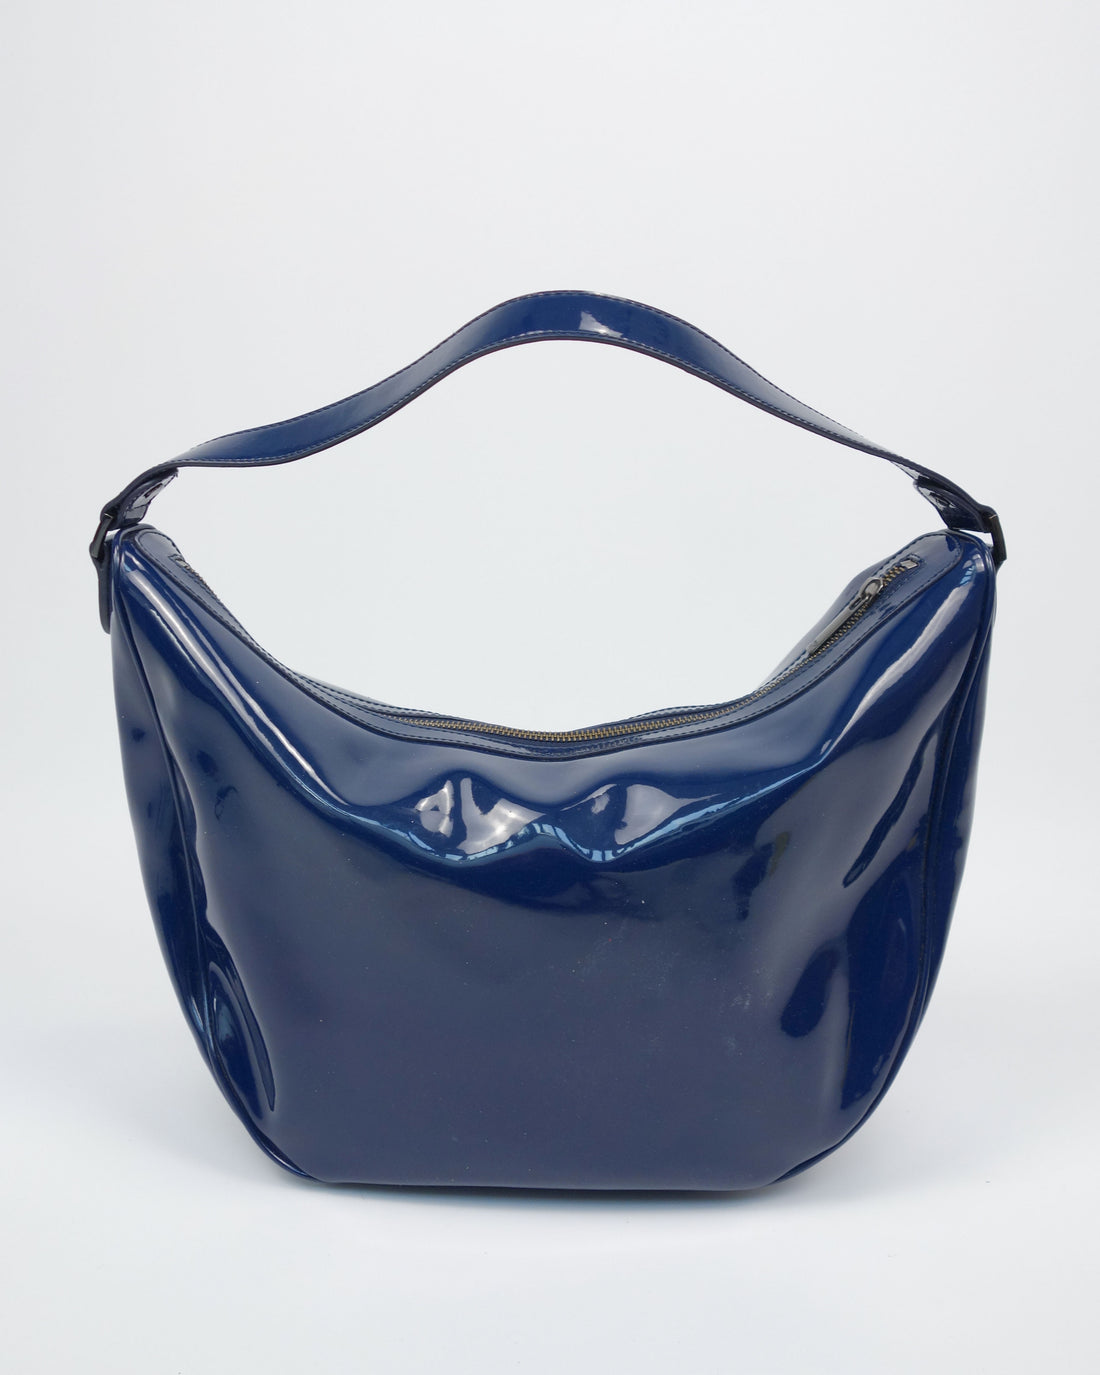 Armani Navy Blue Shiny Shoulder Bag 2000's